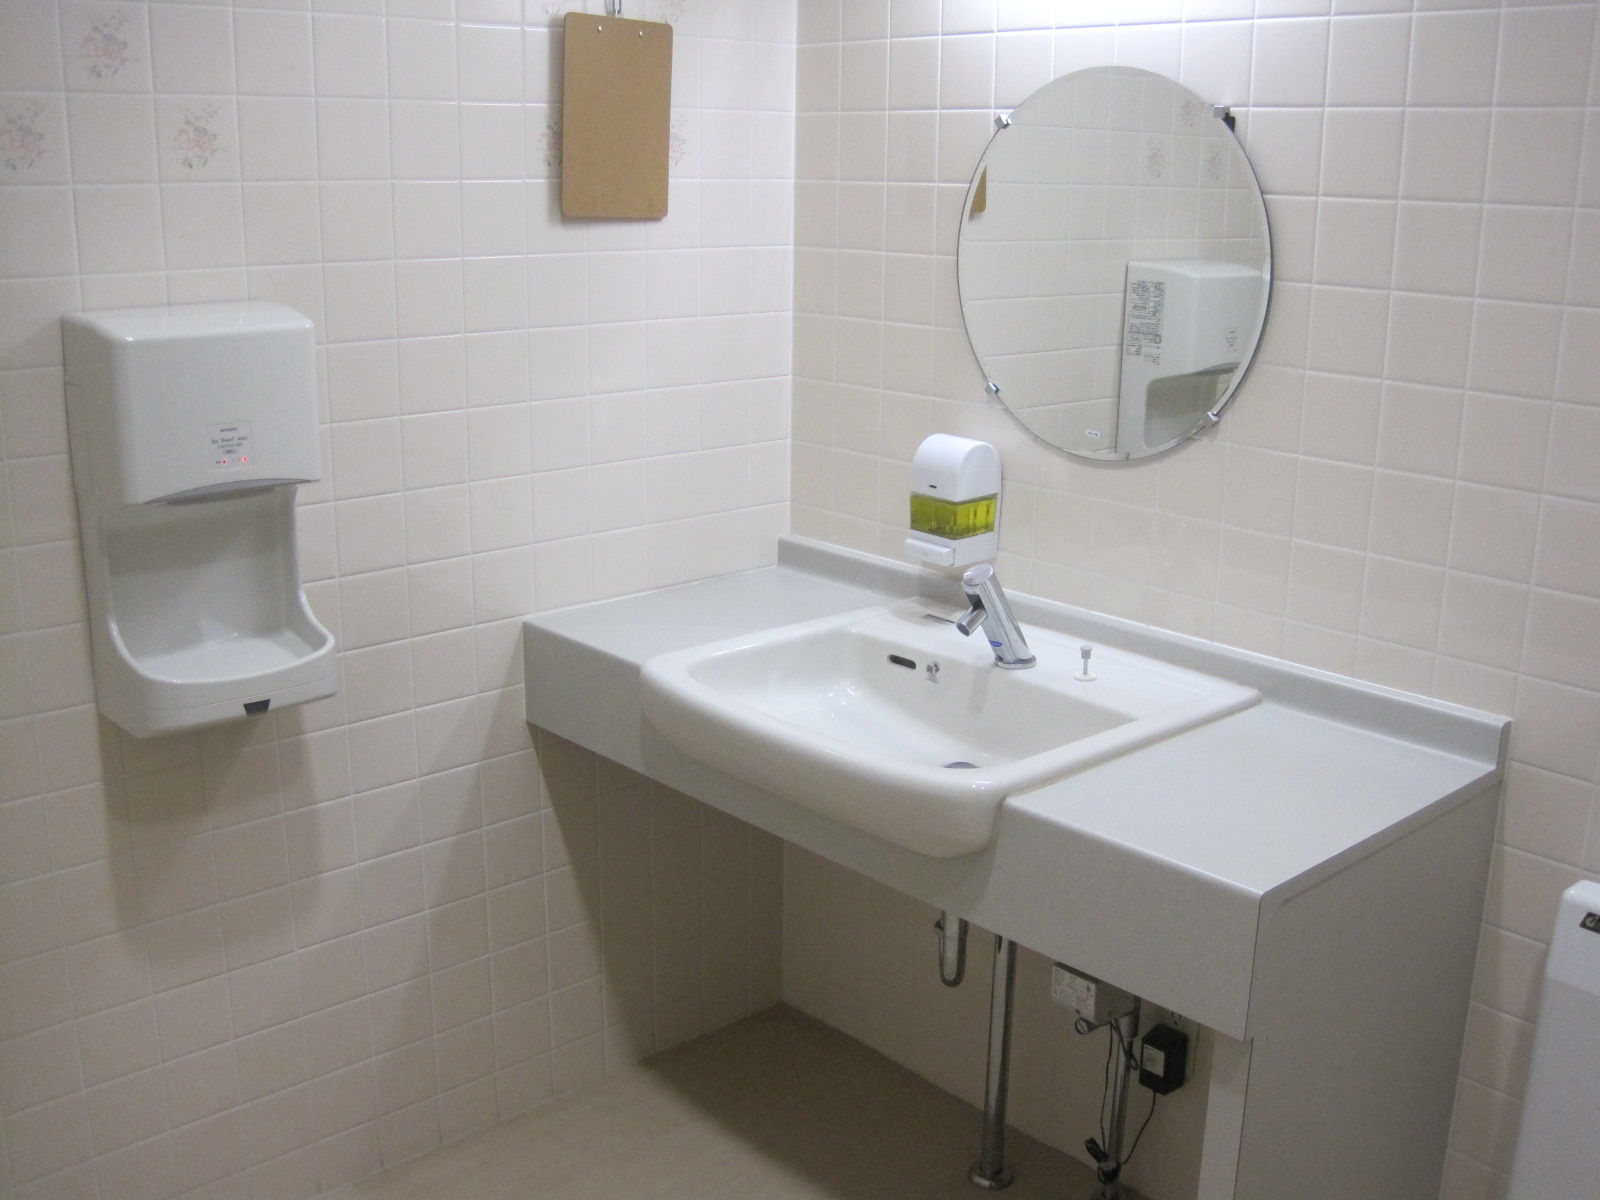 トイレ設備調査日記atosatu : 2012年04月01日